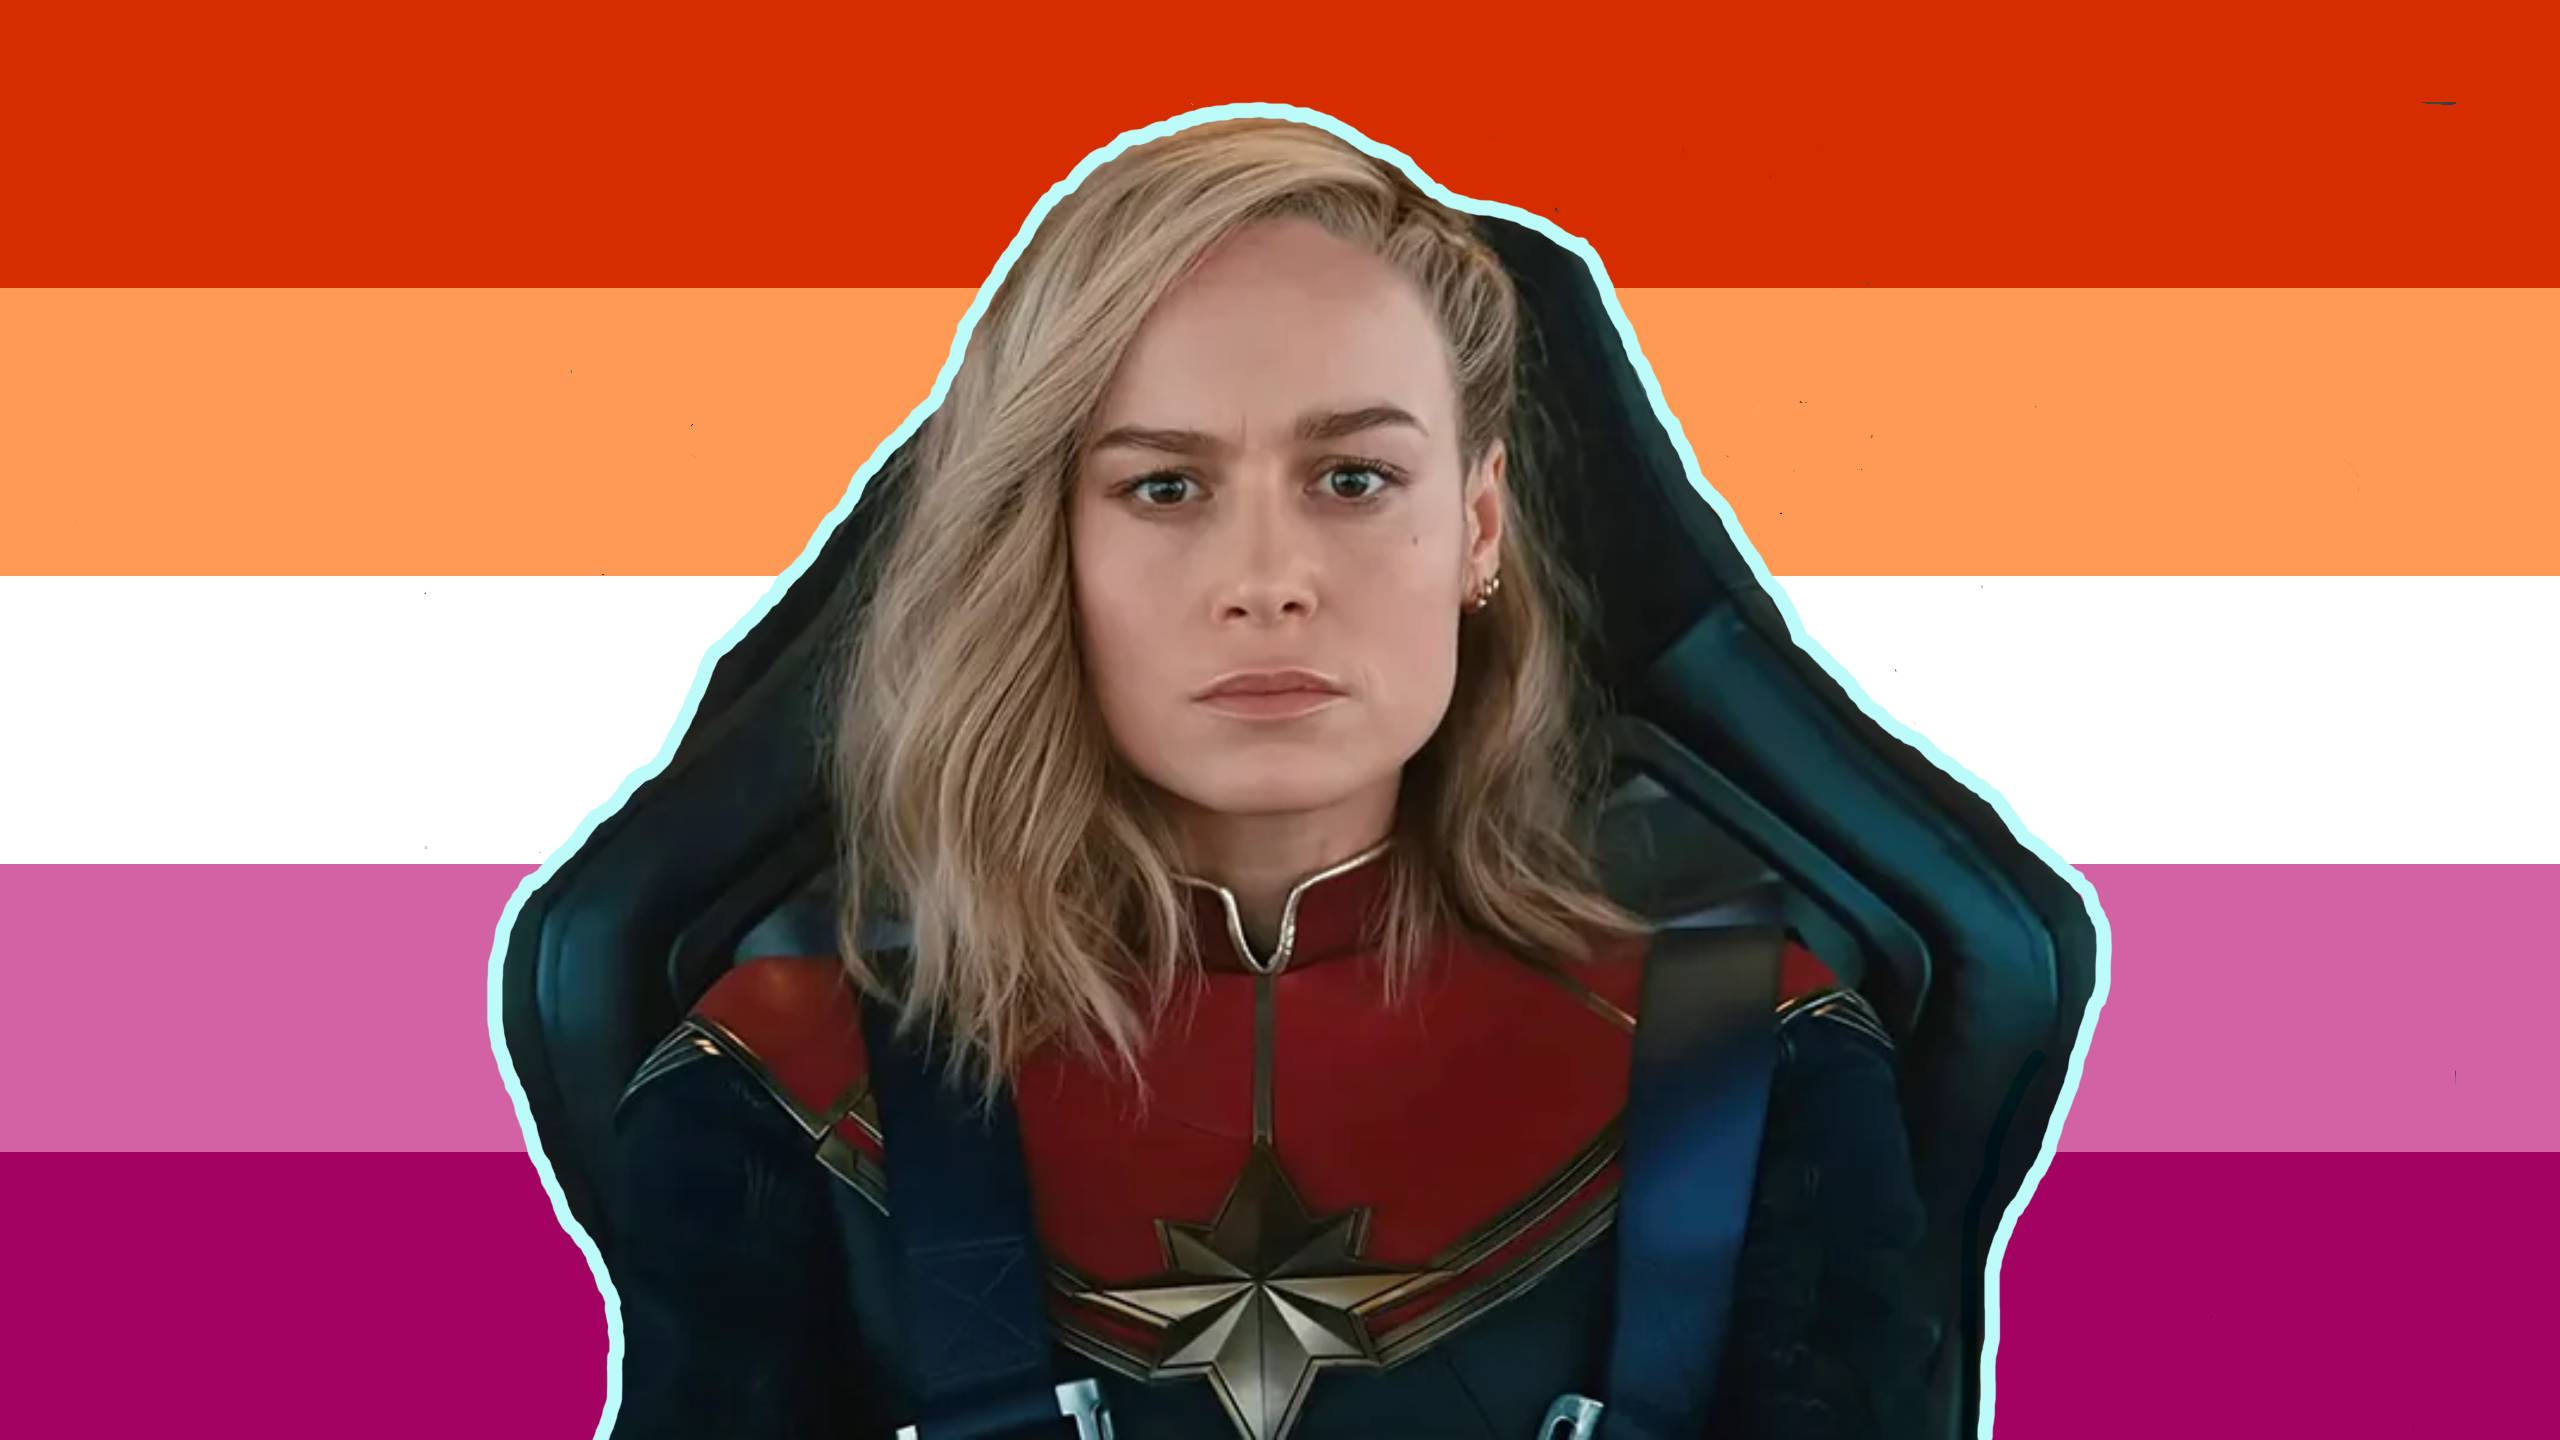 Captain Marvel 2 Director Got Annoyed by Avengers: Endgame's All